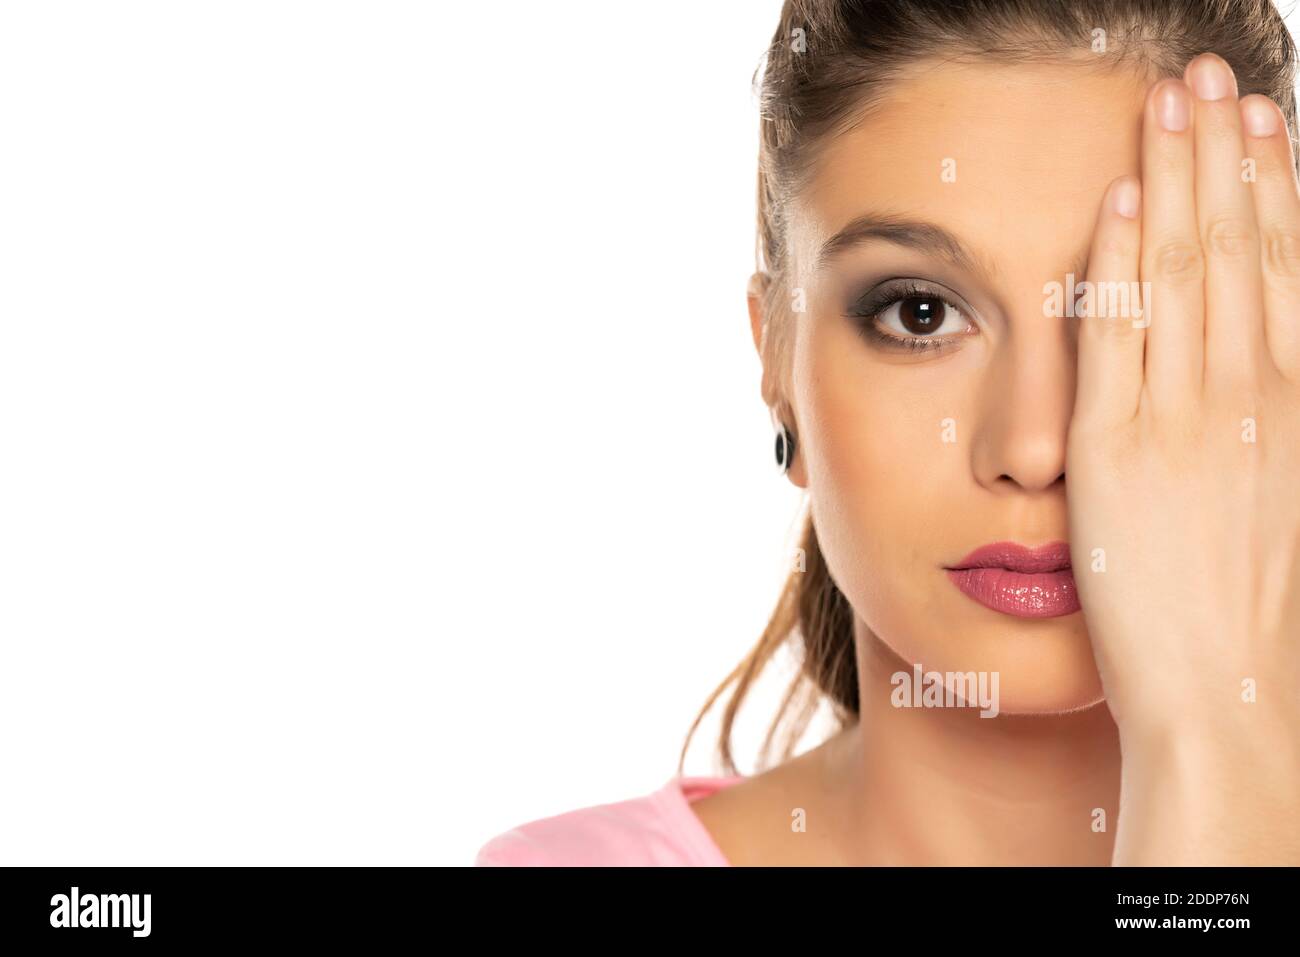 XaPorträt der jungen schönen Frau mit Make-up, bedeckt ihr Auge mit der Hand auf weißem Hintergrund Stockfoto